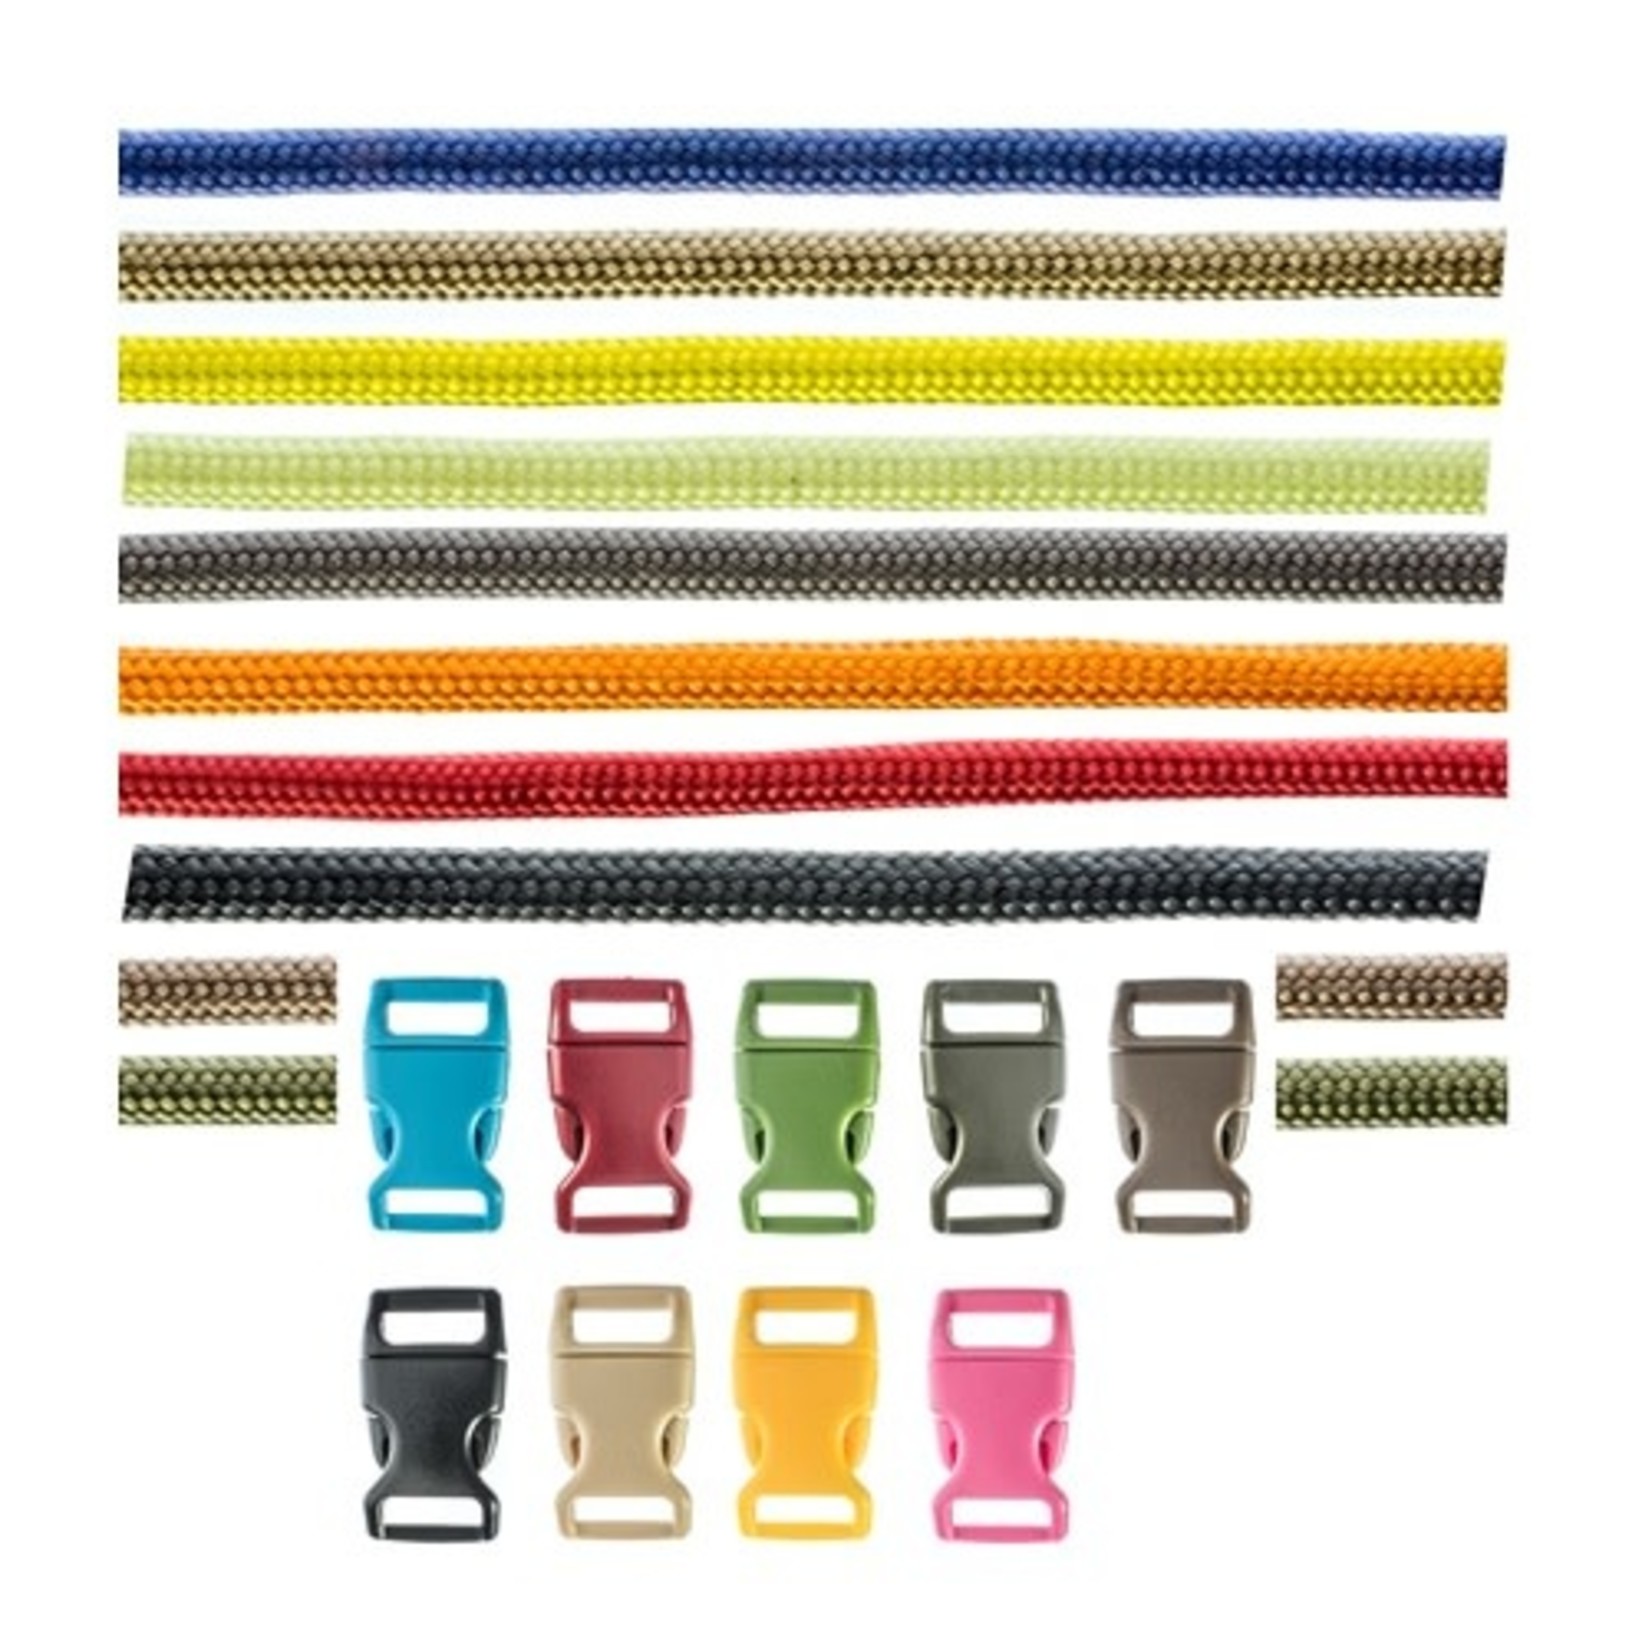 Sona SE 10 pc. Paracord Bracelet Kit - Solids